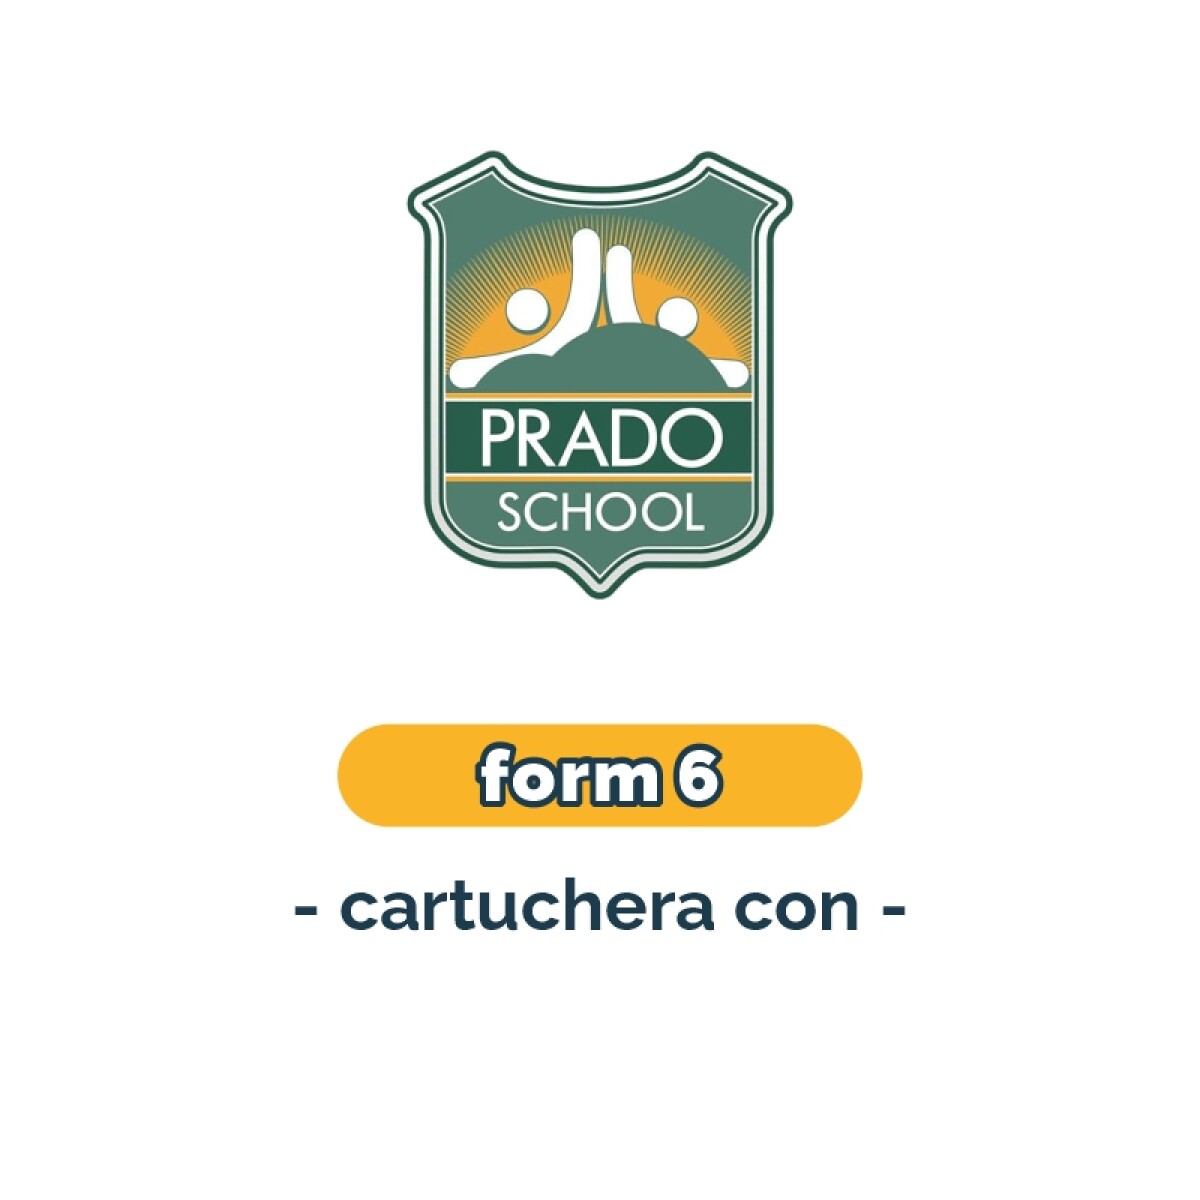 Lista de materiales - Primaria Form 6 cartuchera Prado School 